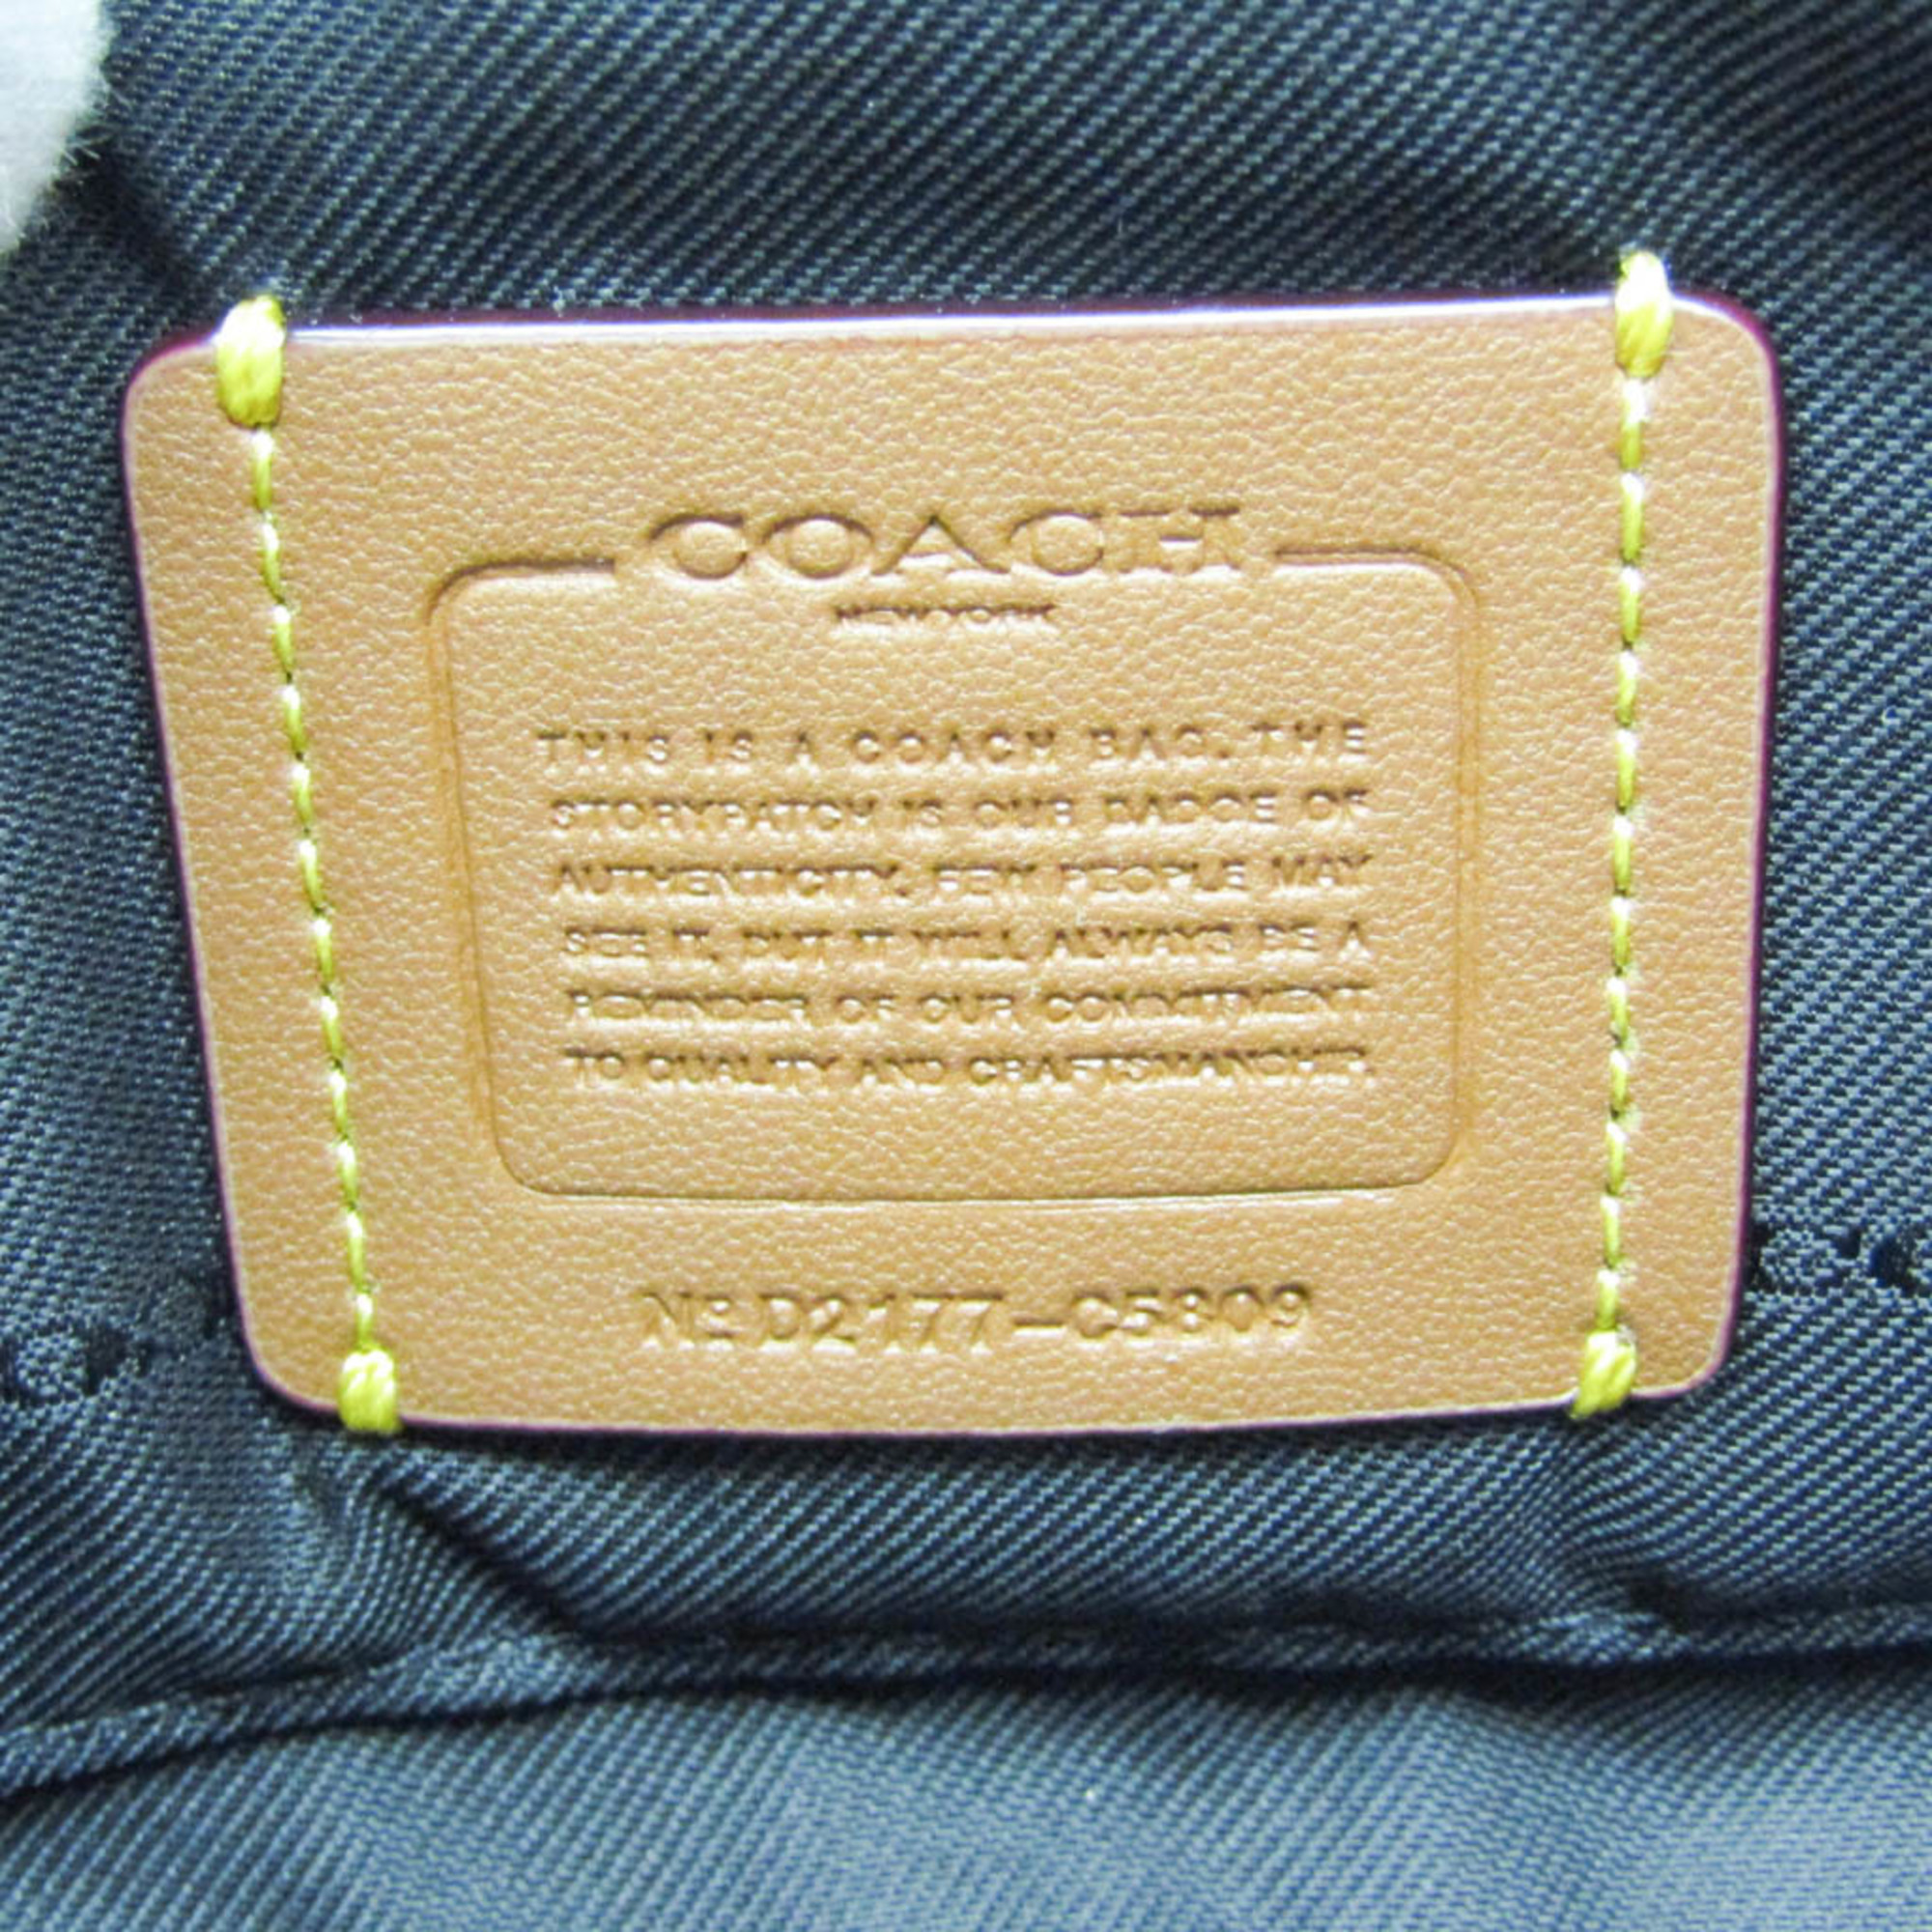 Coach Camera Bag C5809 Women's Leather Shoulder Bag Black